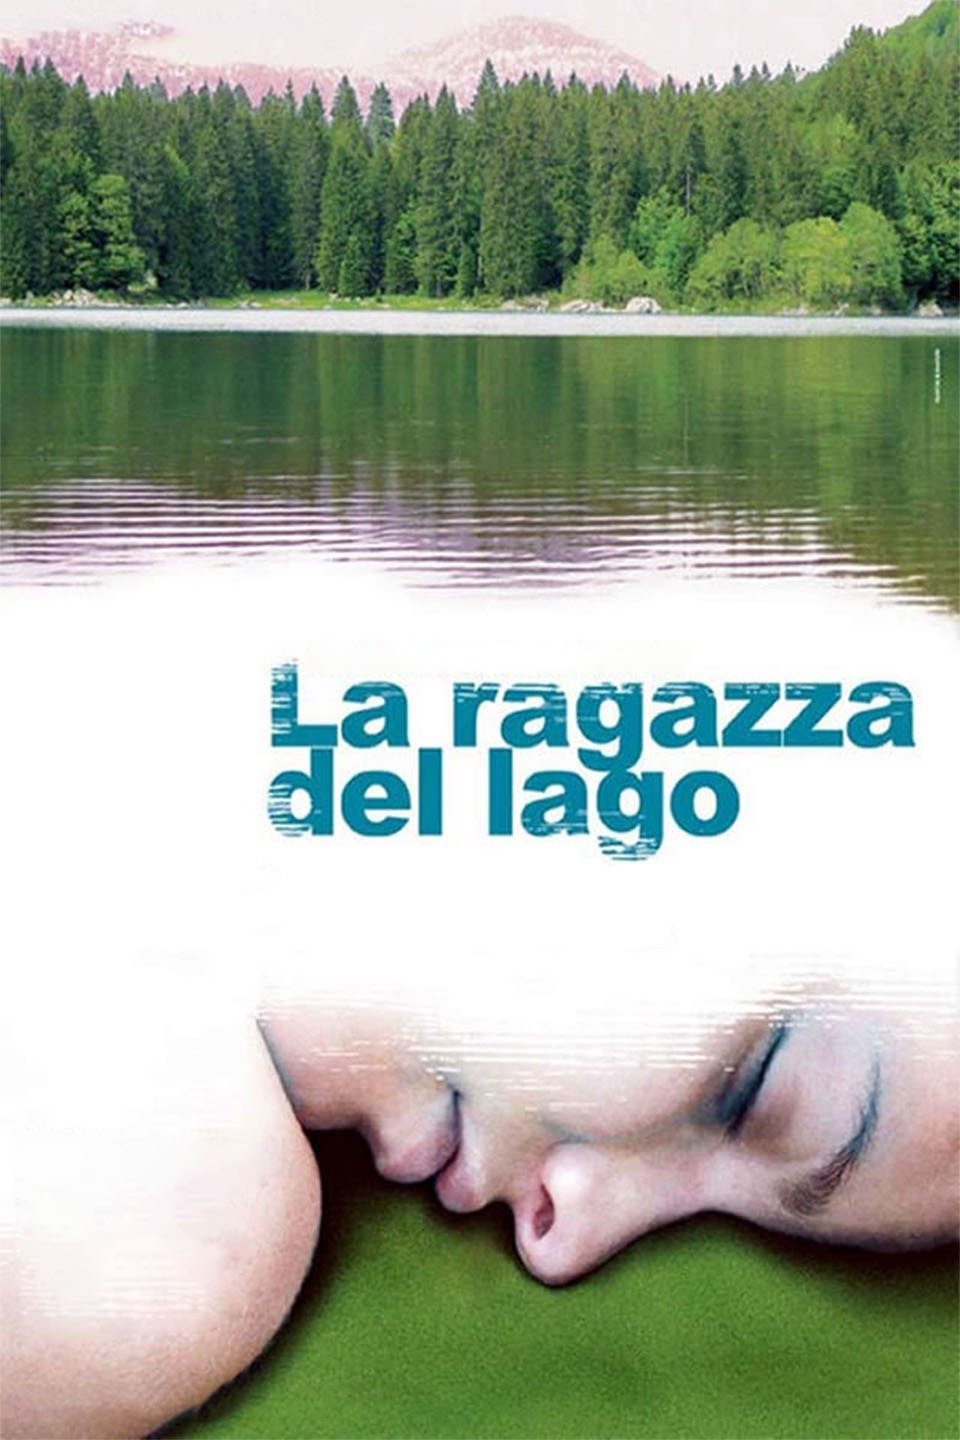 La ragazza del lago [HD] (2007)